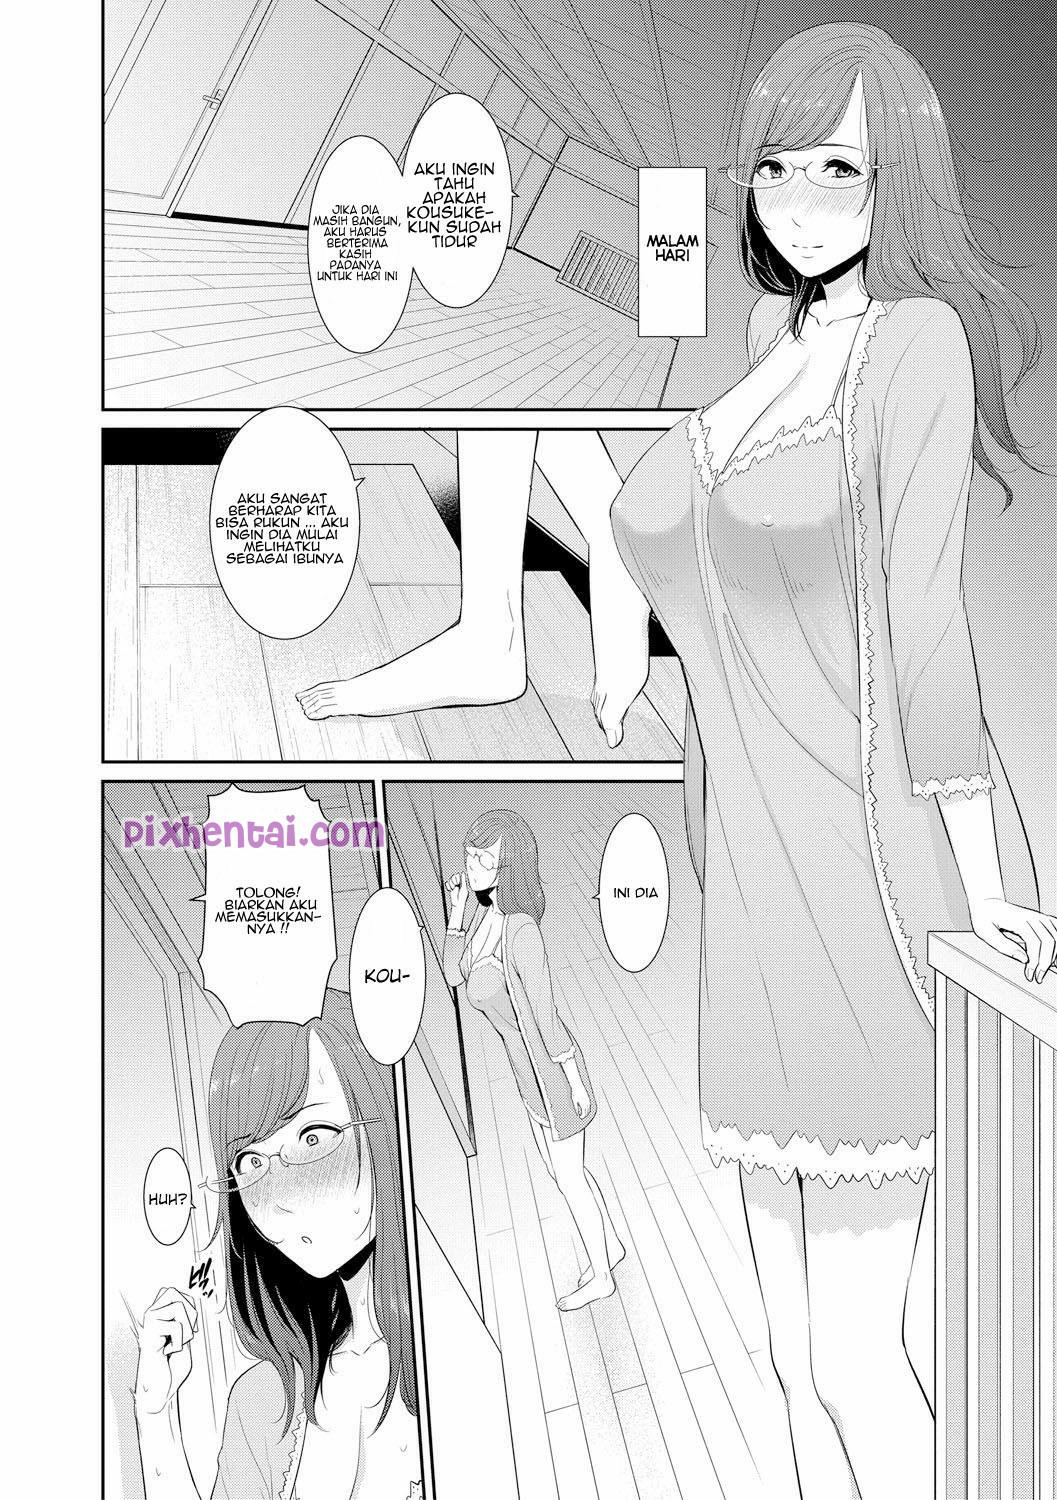 Komik hentai xxx manga sex bokep menjadi rebutan 2 ibu angkat bohay 04